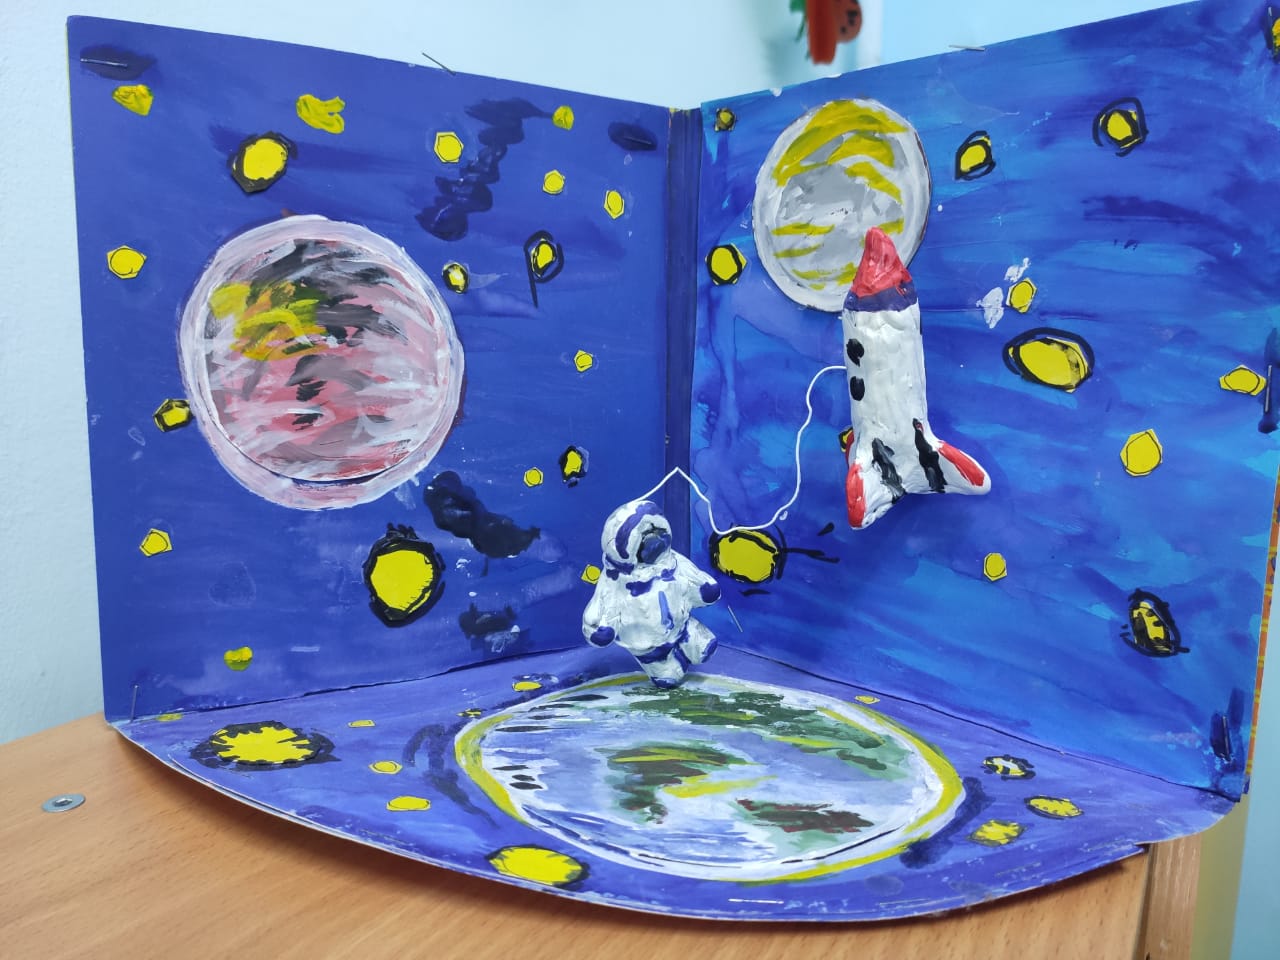 Неделя космонавтики в детском саду